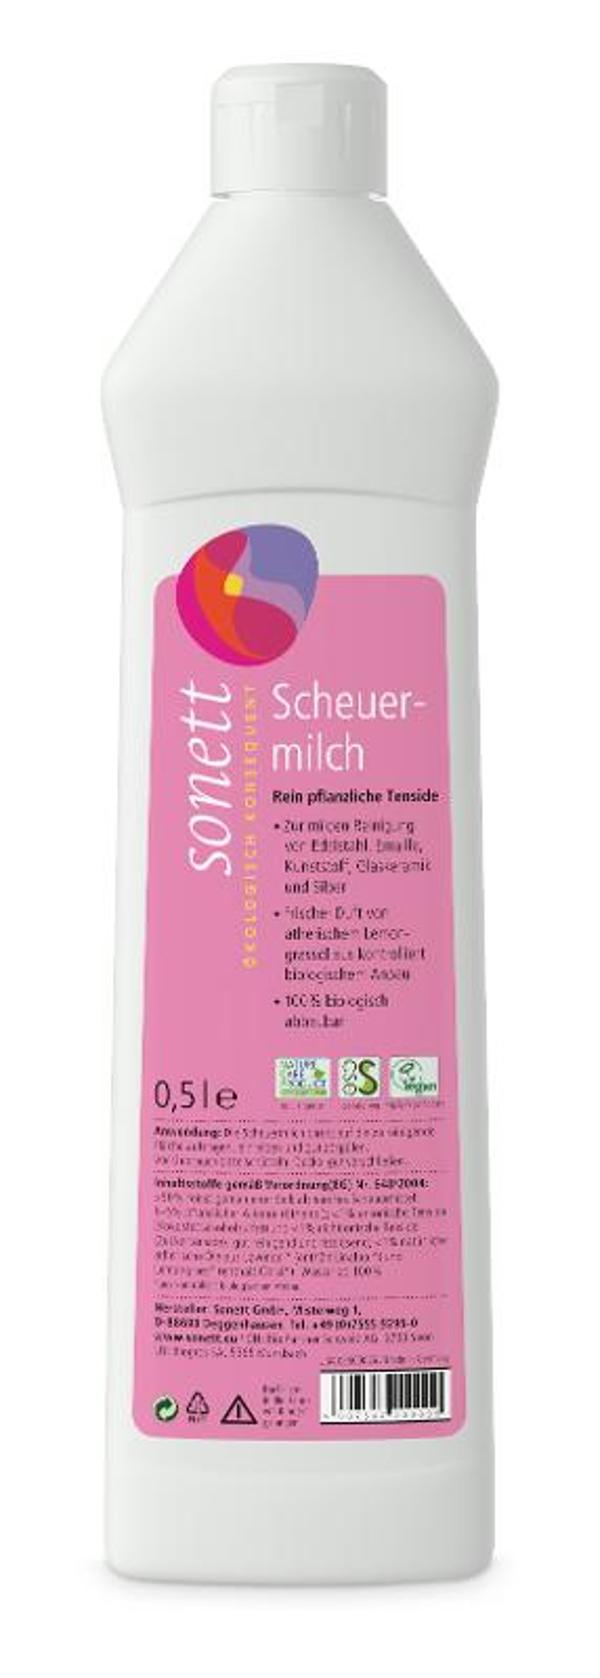 Produktfoto zu Scheuermilch 0,5 l Sonett